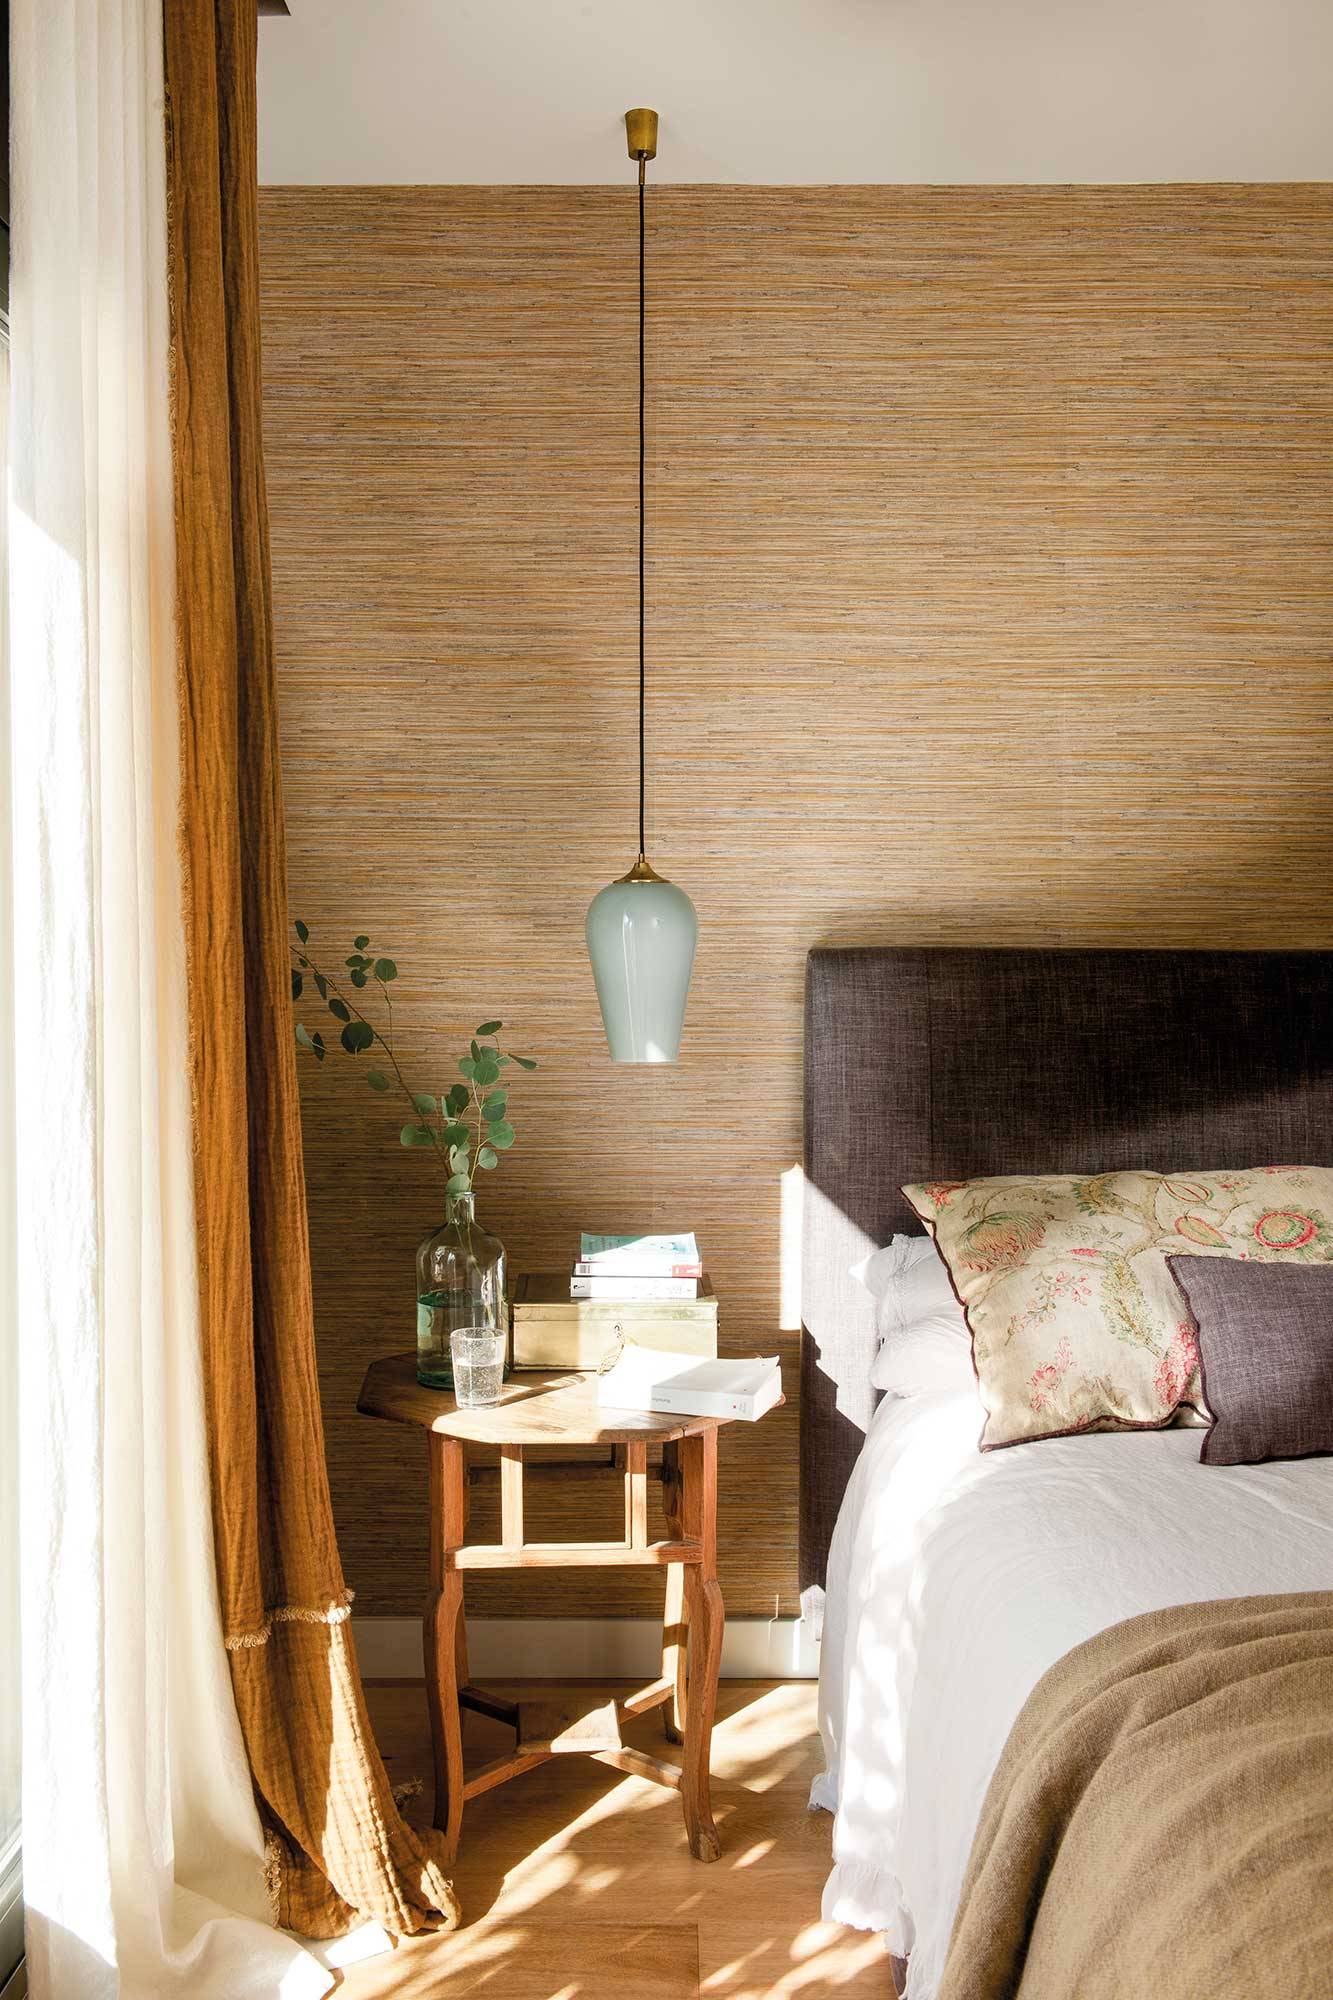 Dormitorio con pared del cabecero tapizada con papel pintado que imita las fibras naturales 00501702